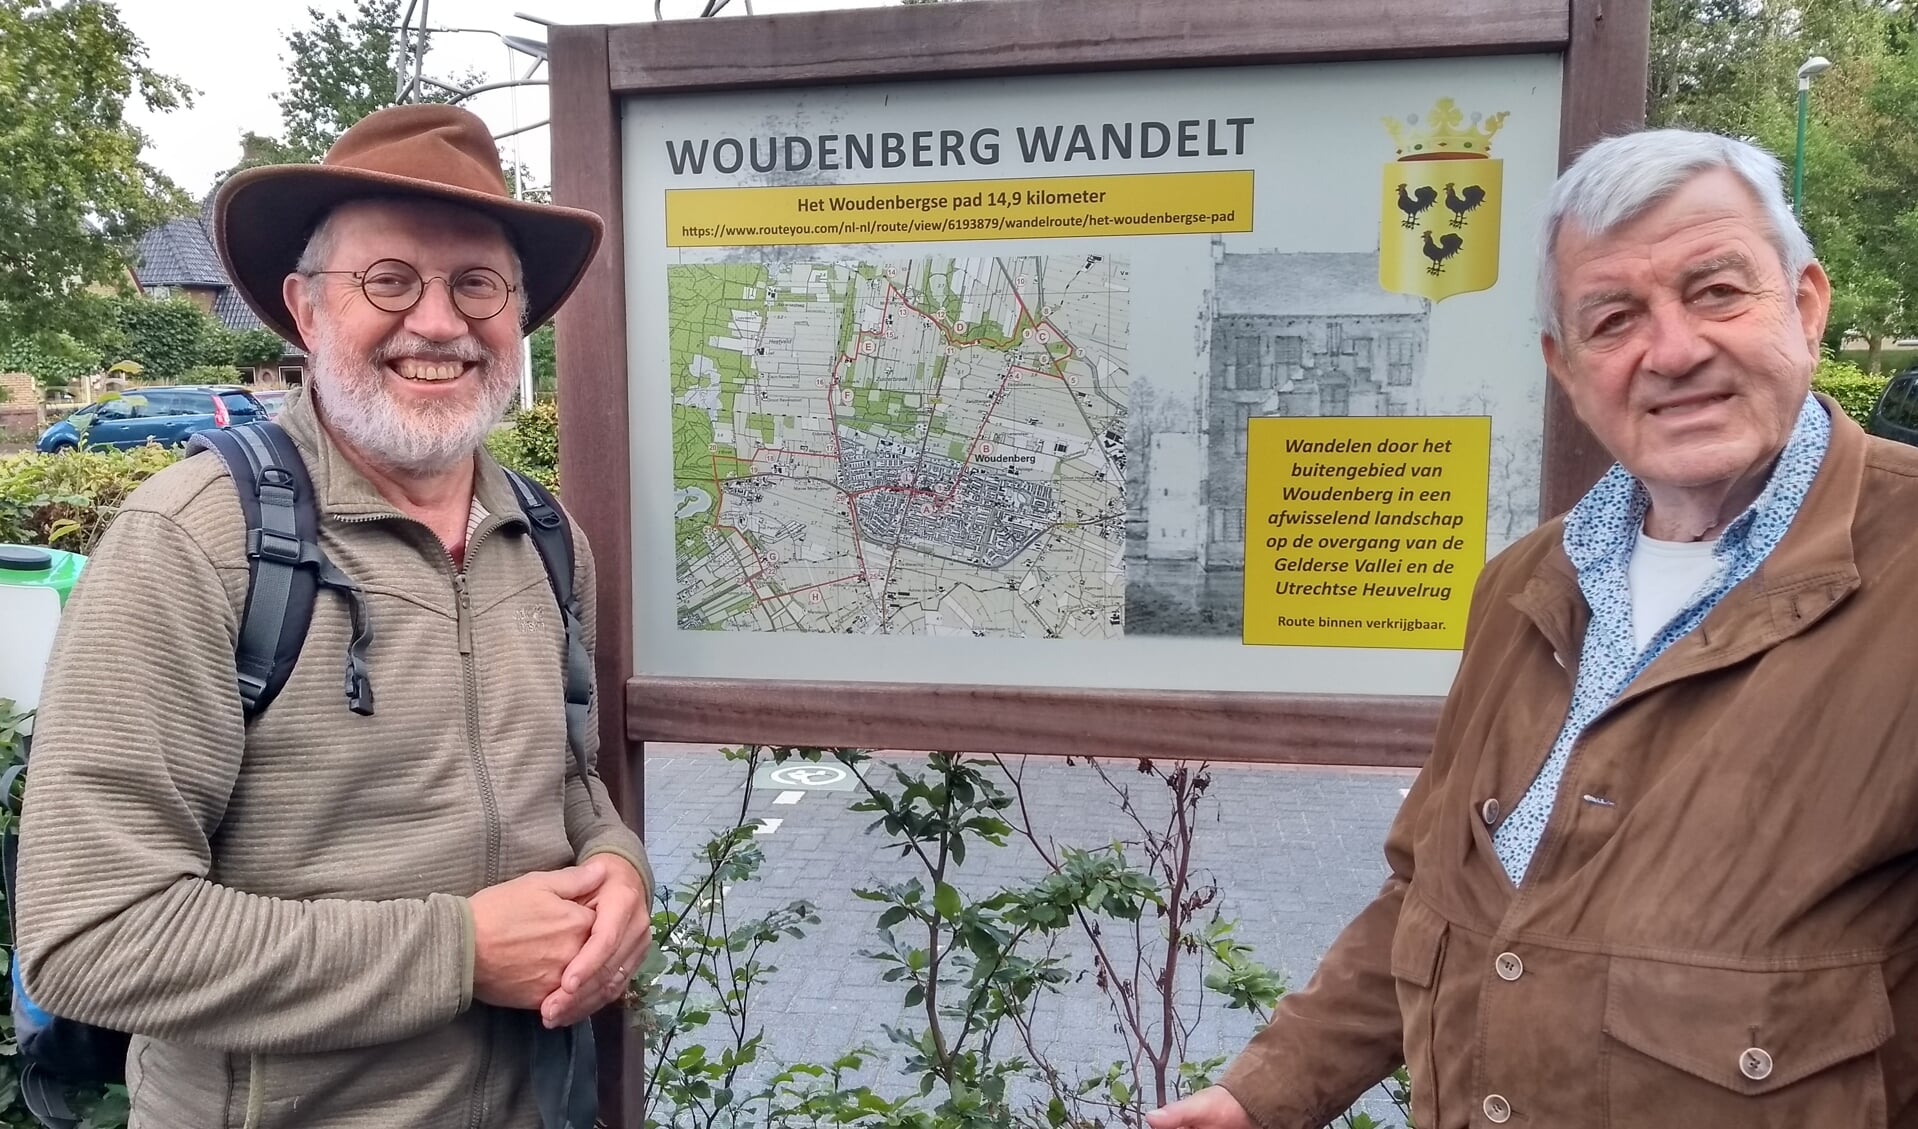 Job van der Mijl en Ody Honders bij het eerste 'wandelpaneel', bij het Cultuurhuis in Woudenberg. De wandeling kan beginnen.